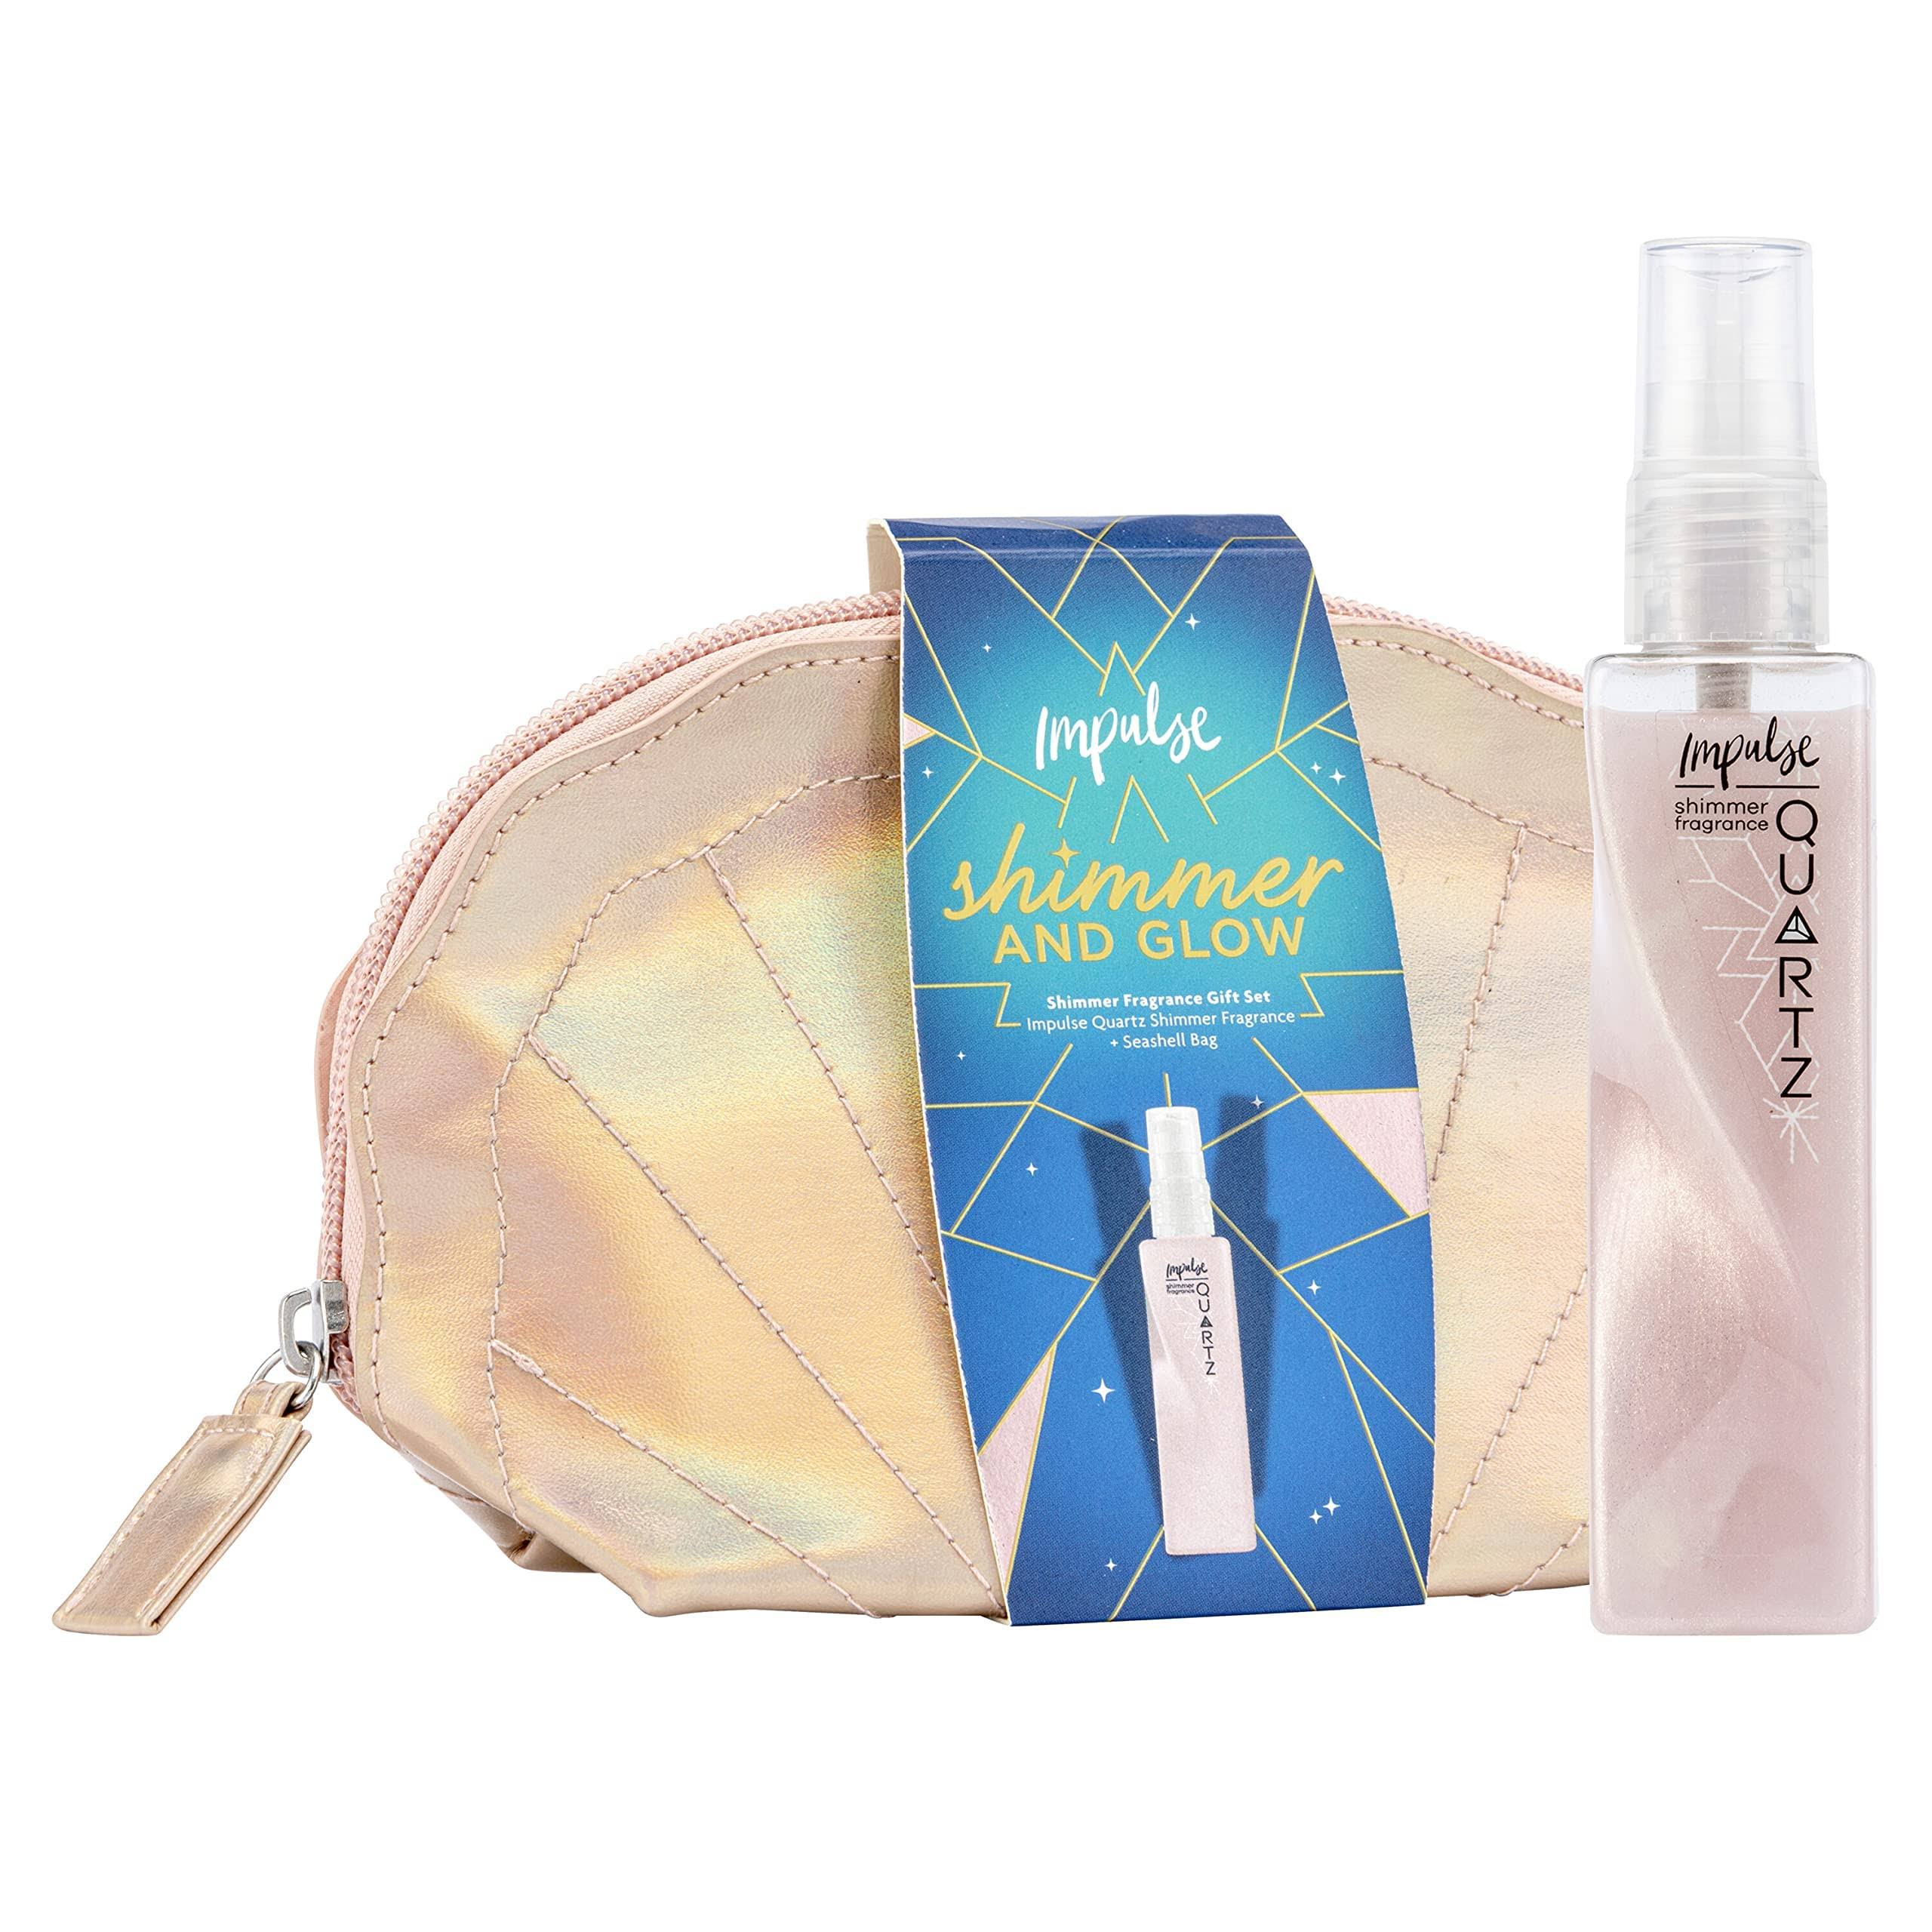 Impulse Shimmer & Glow Mist Beauty Bag Gift Set